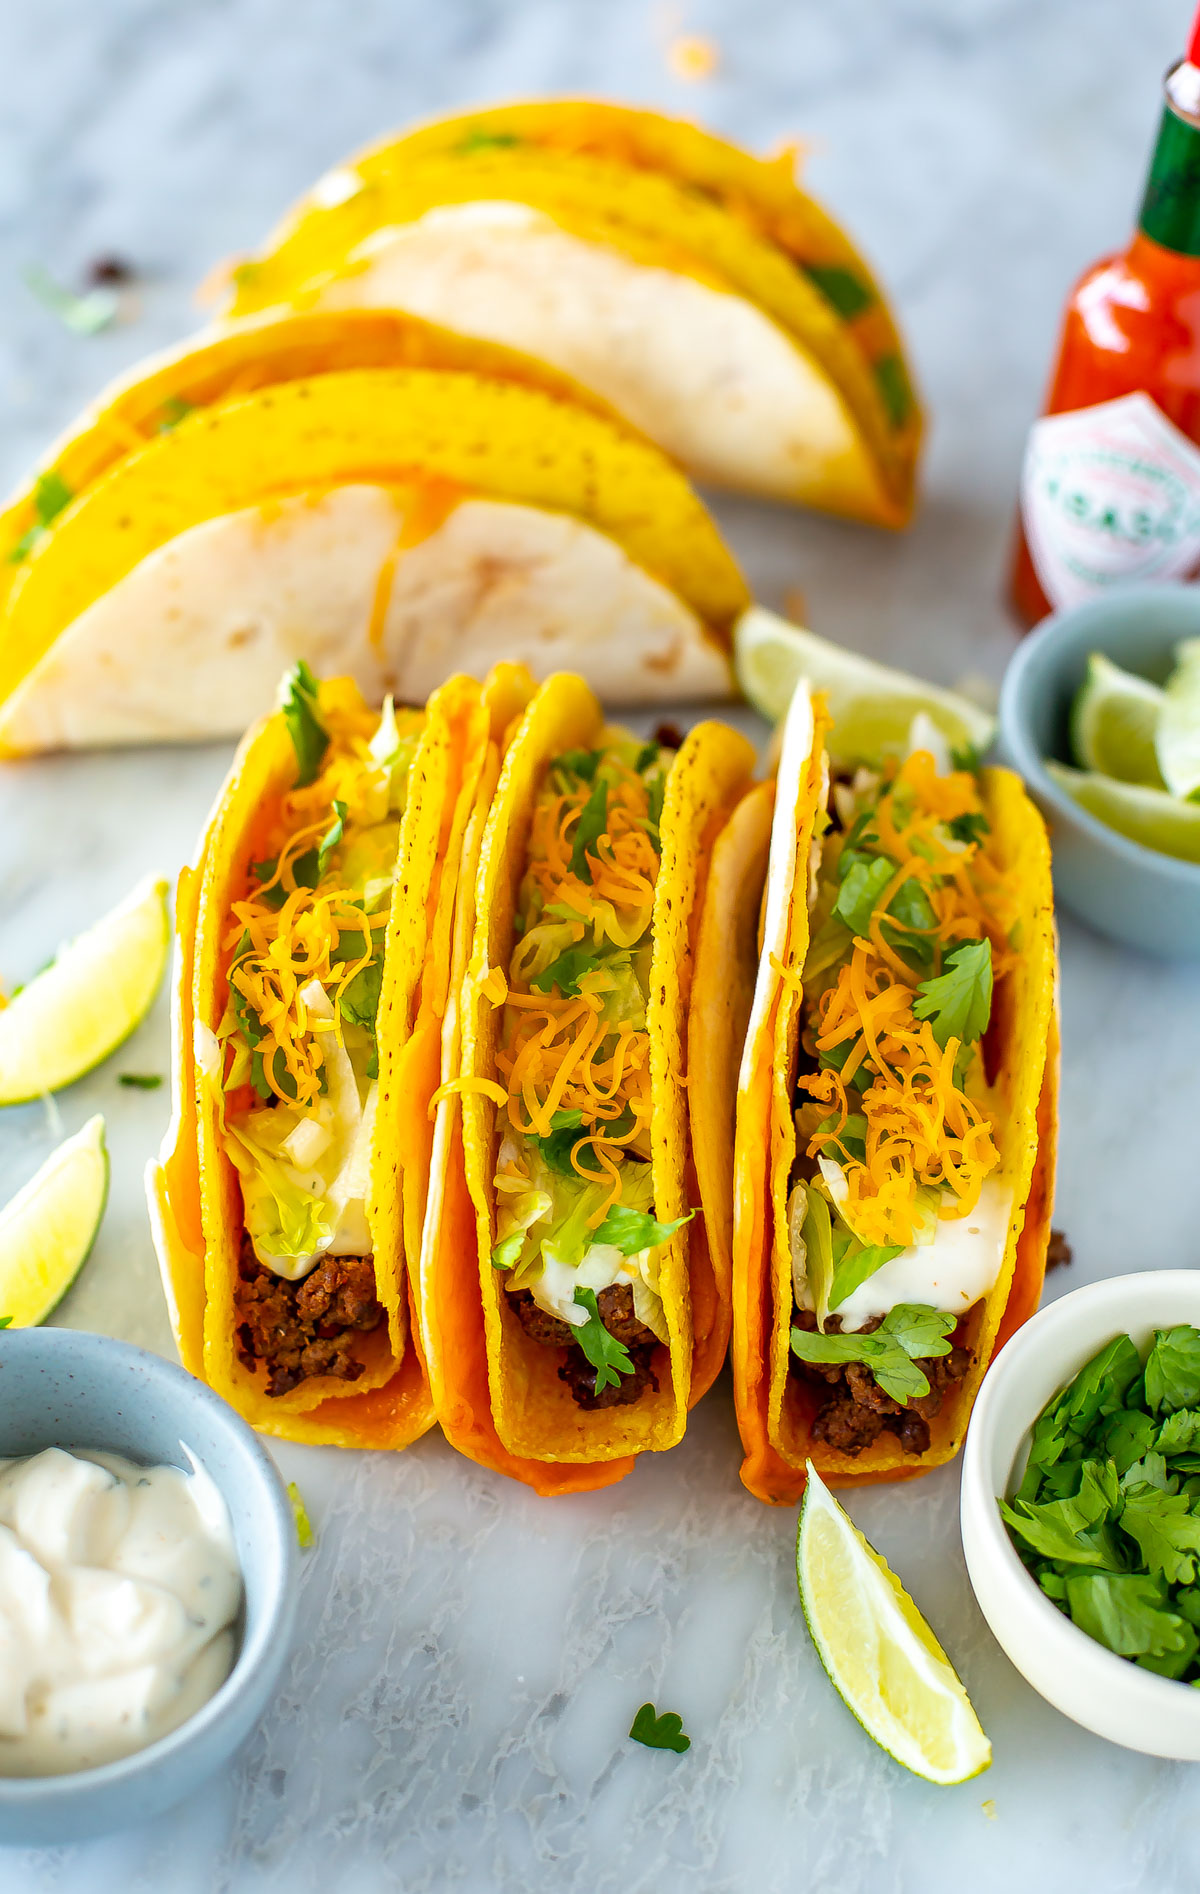 Three cheesy gordita crunch tacos placed side by side.